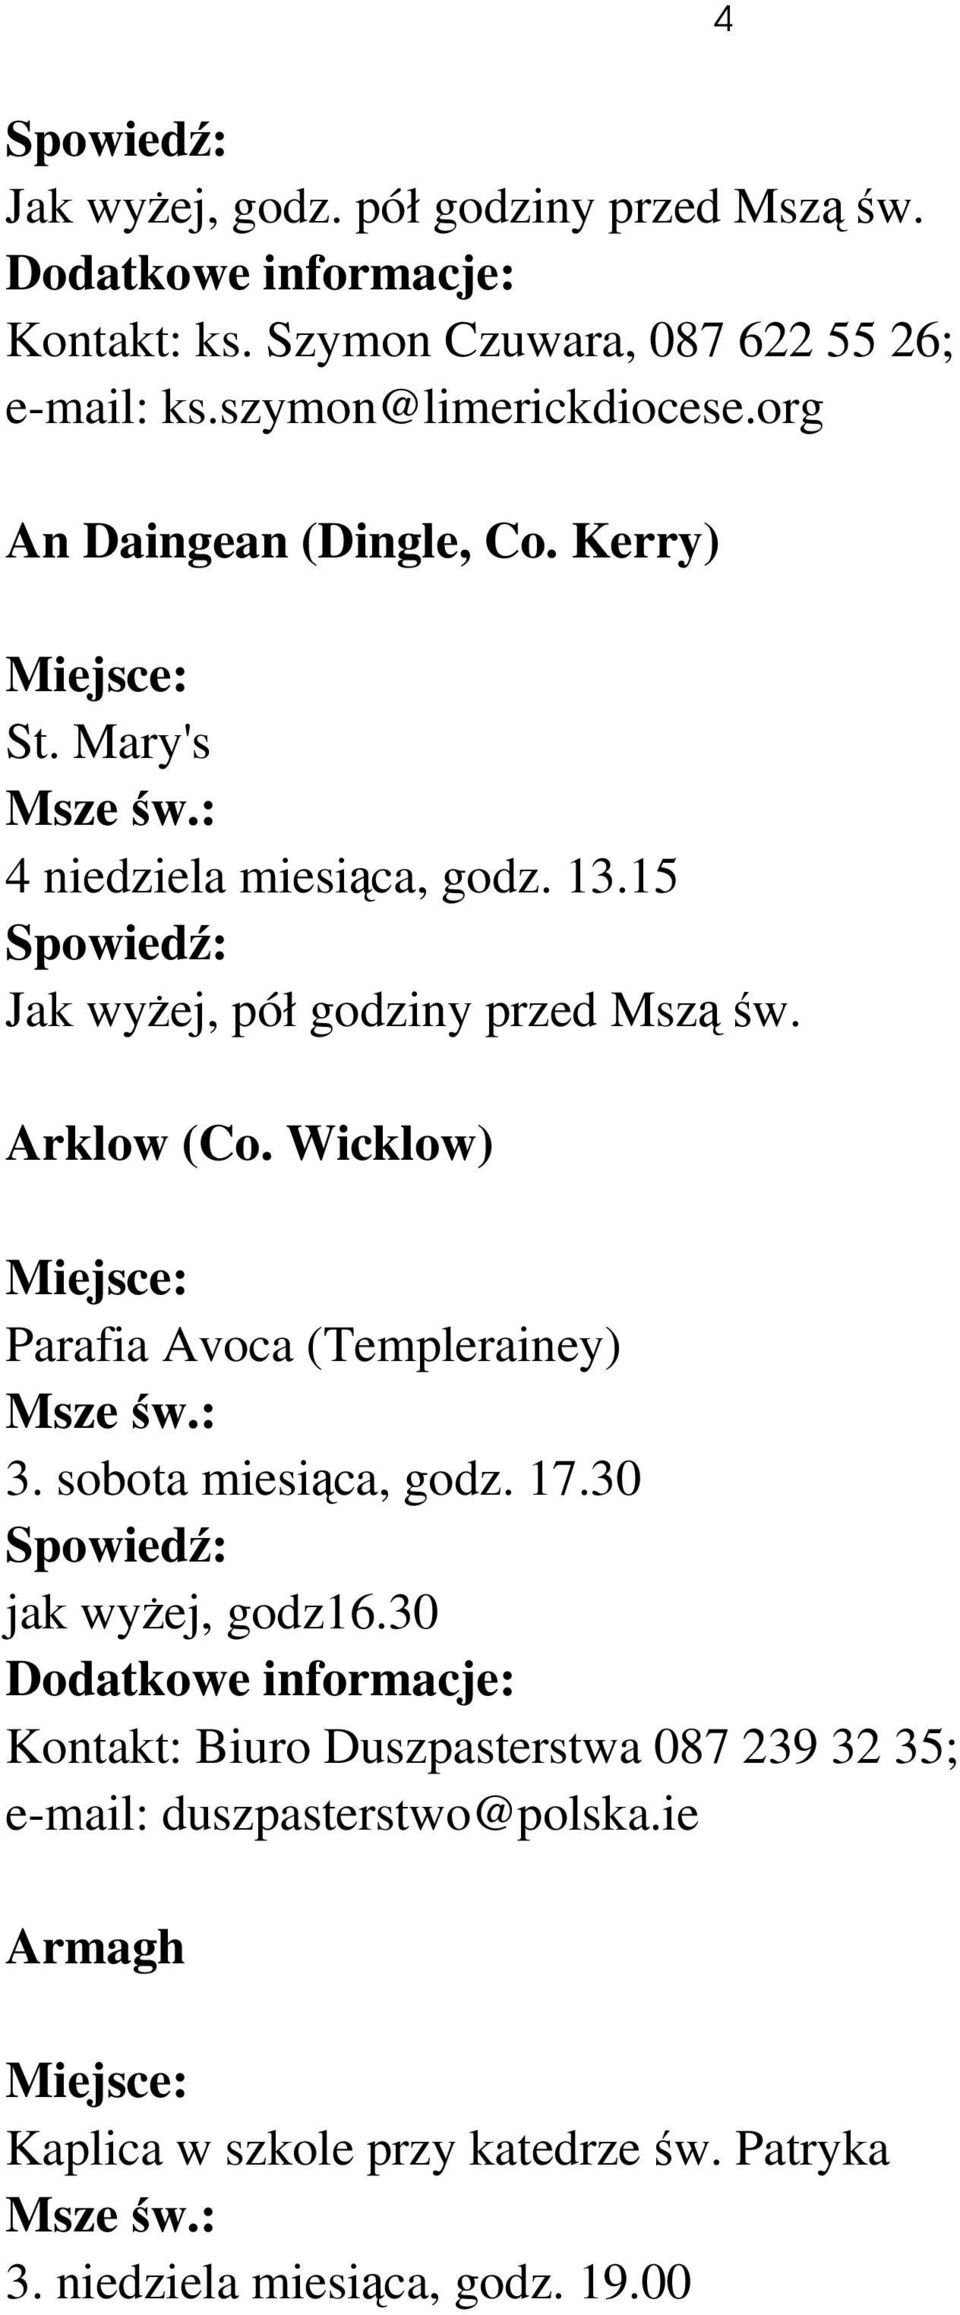 Arklow (Co. Wicklow) Parafia Avoca (Templerainey) 3. sobota miesiąca, godz. 17.30 jak wyżej, godz16.